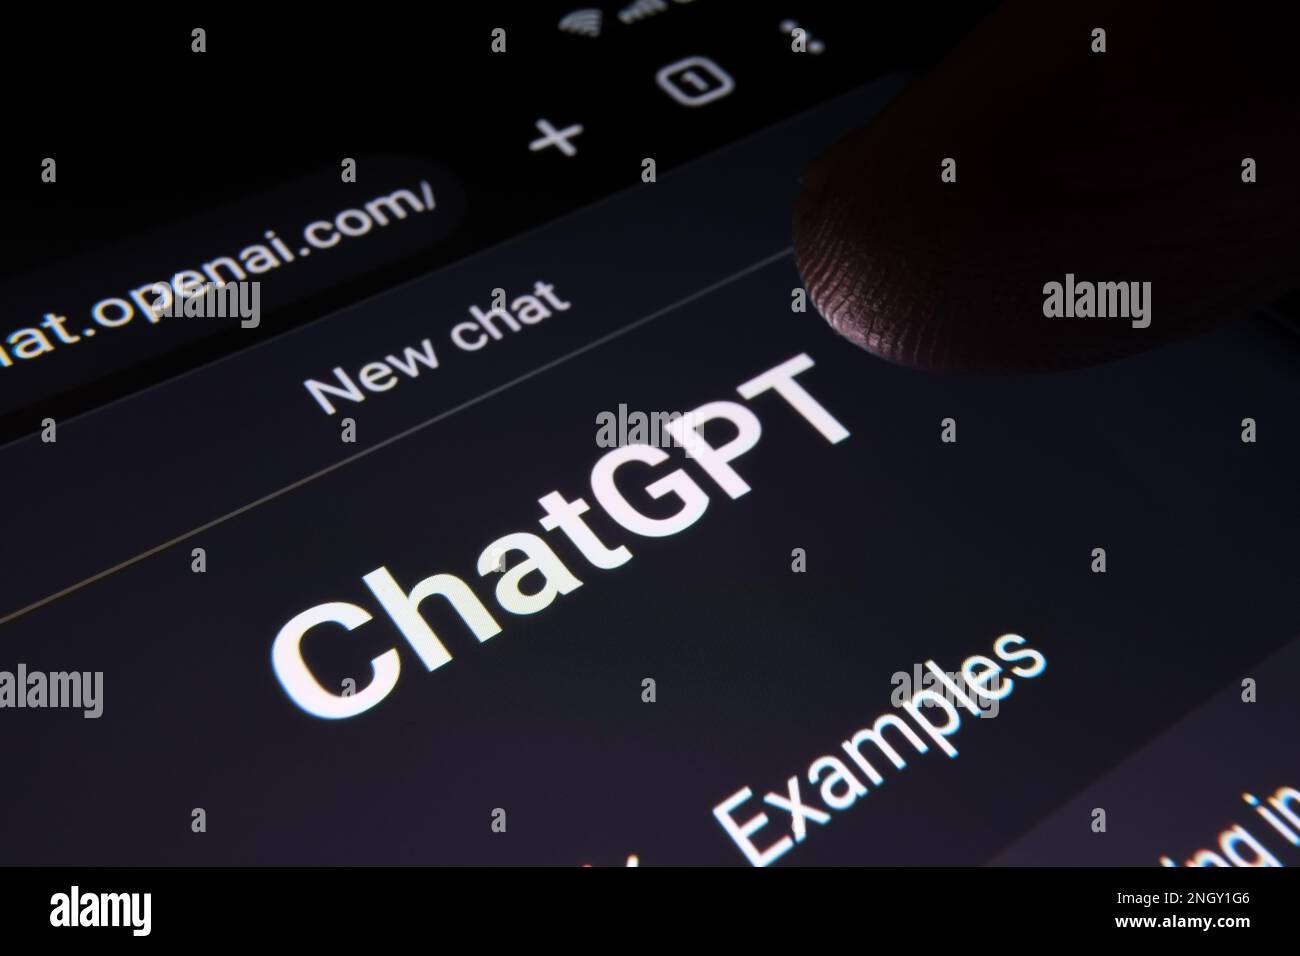 Doigt touchant l'écran ChatGPT chat bot vu sur l'écran du smartphone avec le grand logo Chat GPT. Ai chatbot par OpenAI. Photo macro. Stafford, Royaume-Uni Banque D'Images